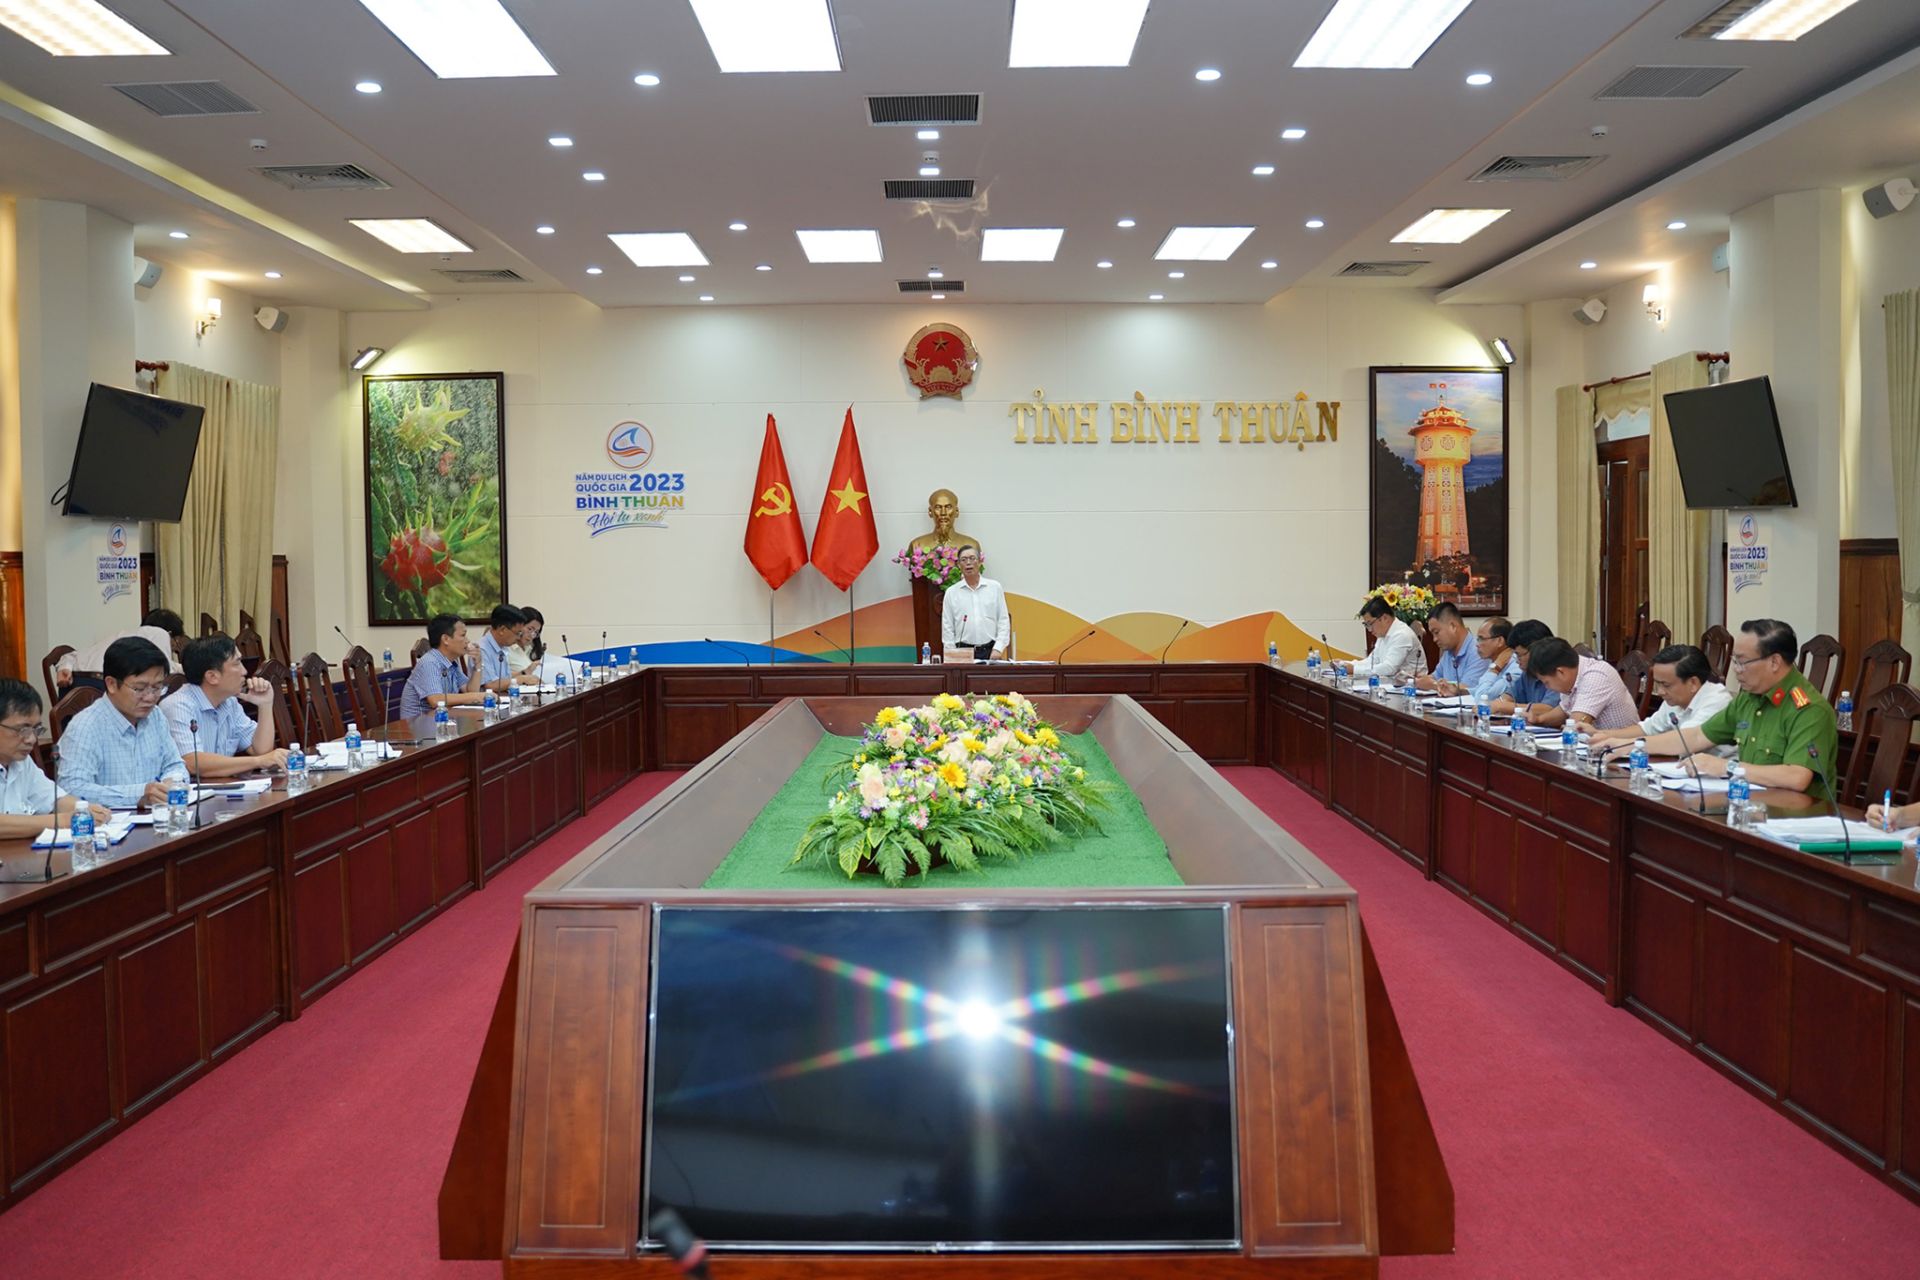 UBND tỉnh Phan Văn Đăng đã chủ trì buổi làm việc với các sở, ngành có liên quan để giải quyết tình trạng khai thác khoáng sản trái phép trên địa bàn huyện Hàm Tân.